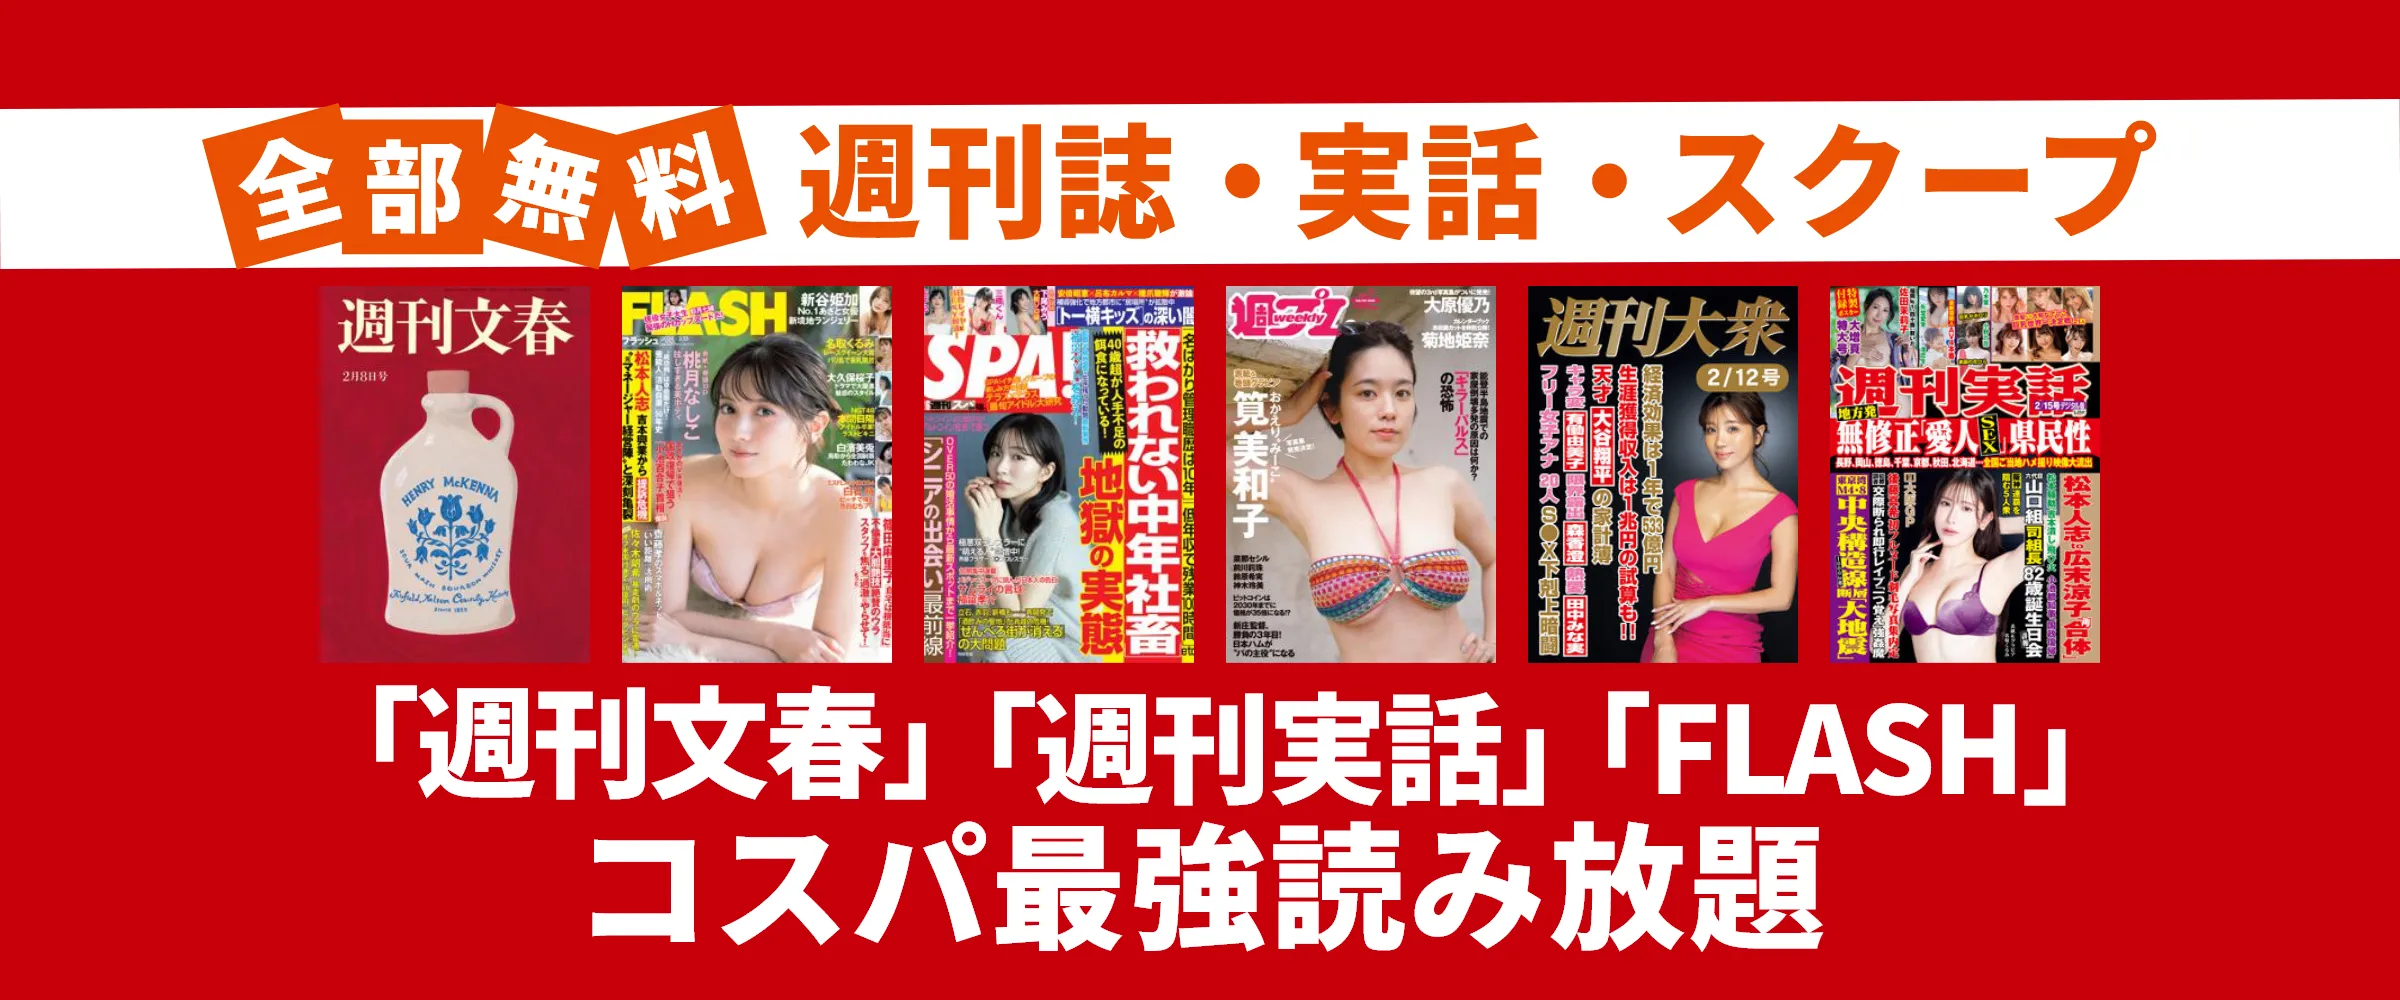 たった550円で文春、FRIDAY、アサヒ芸能など週刊誌・実話・ビジネス雑誌100誌以上読み放題。最初の1ヵ月無料。